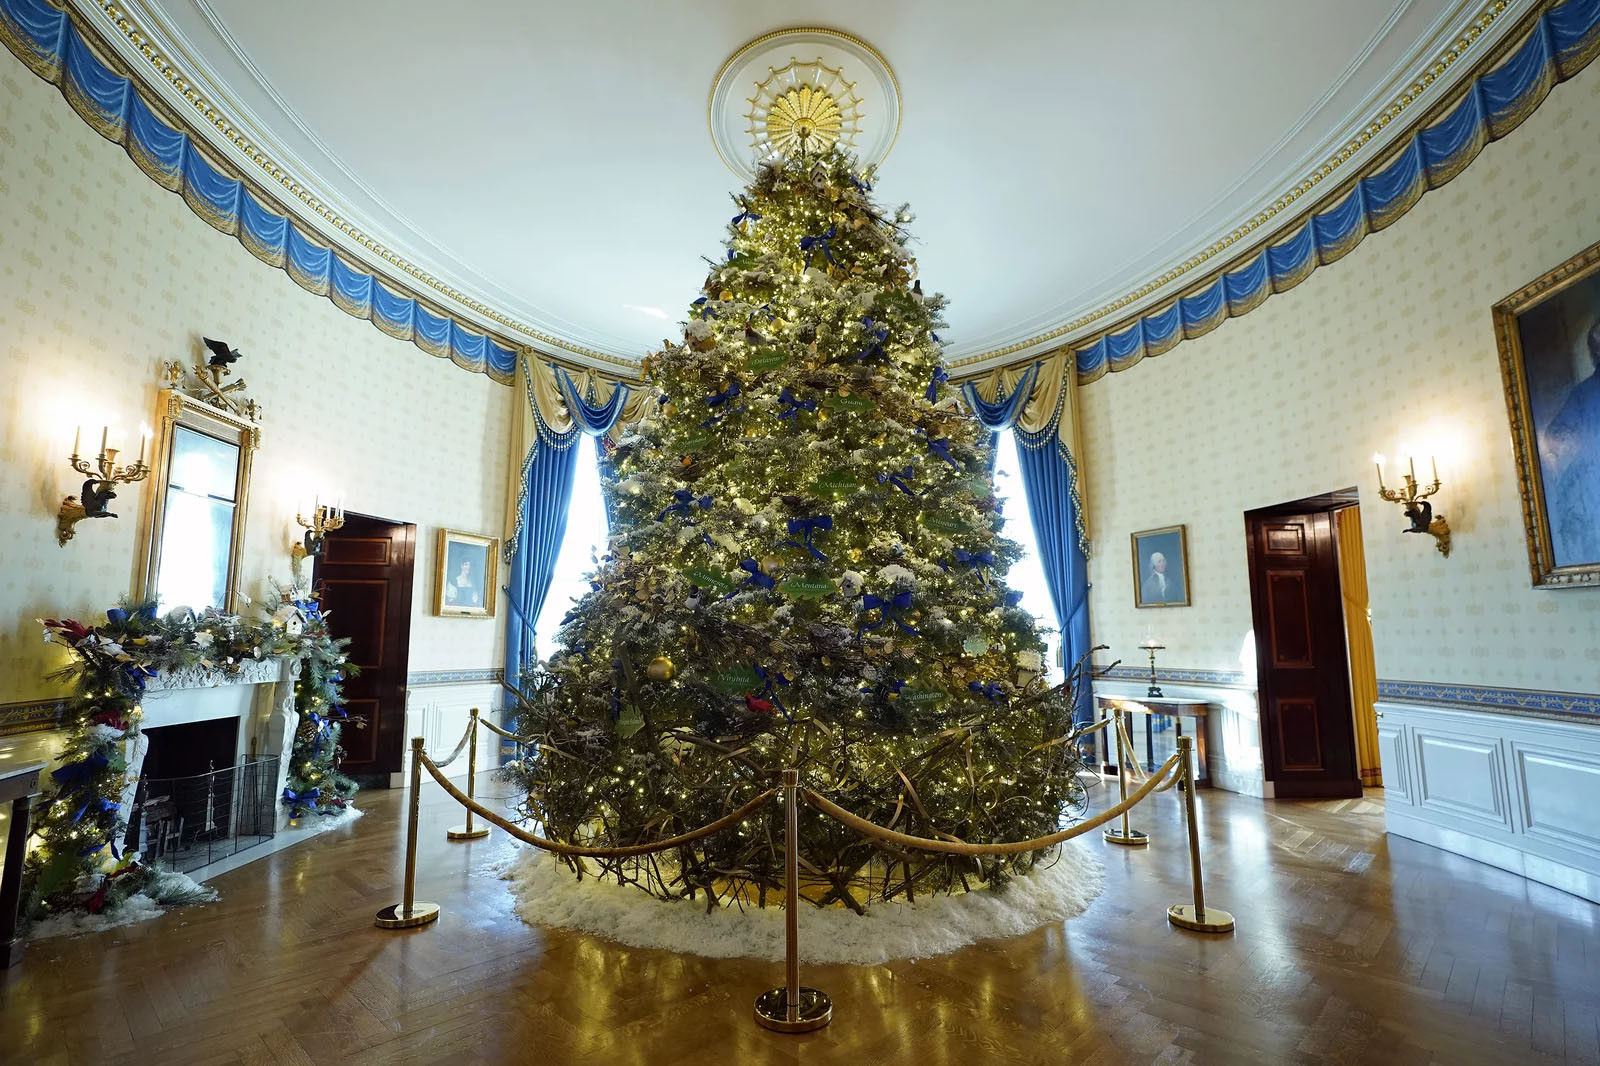 Nhà Trắng Giáng sinh: Hình ảnh Nhà Trắng trong mùa Giáng sinh là một điều thật đặc biệt. Bạn sẽ được chiêm ngưỡng ngôi nhà được trang trí rực rỡ và tràn đầy hoa mỹ sắc với đèn lấp lánh. Chắc chắn bạn sẽ trầm trồ và không muốn bỏ lỡ điều này.